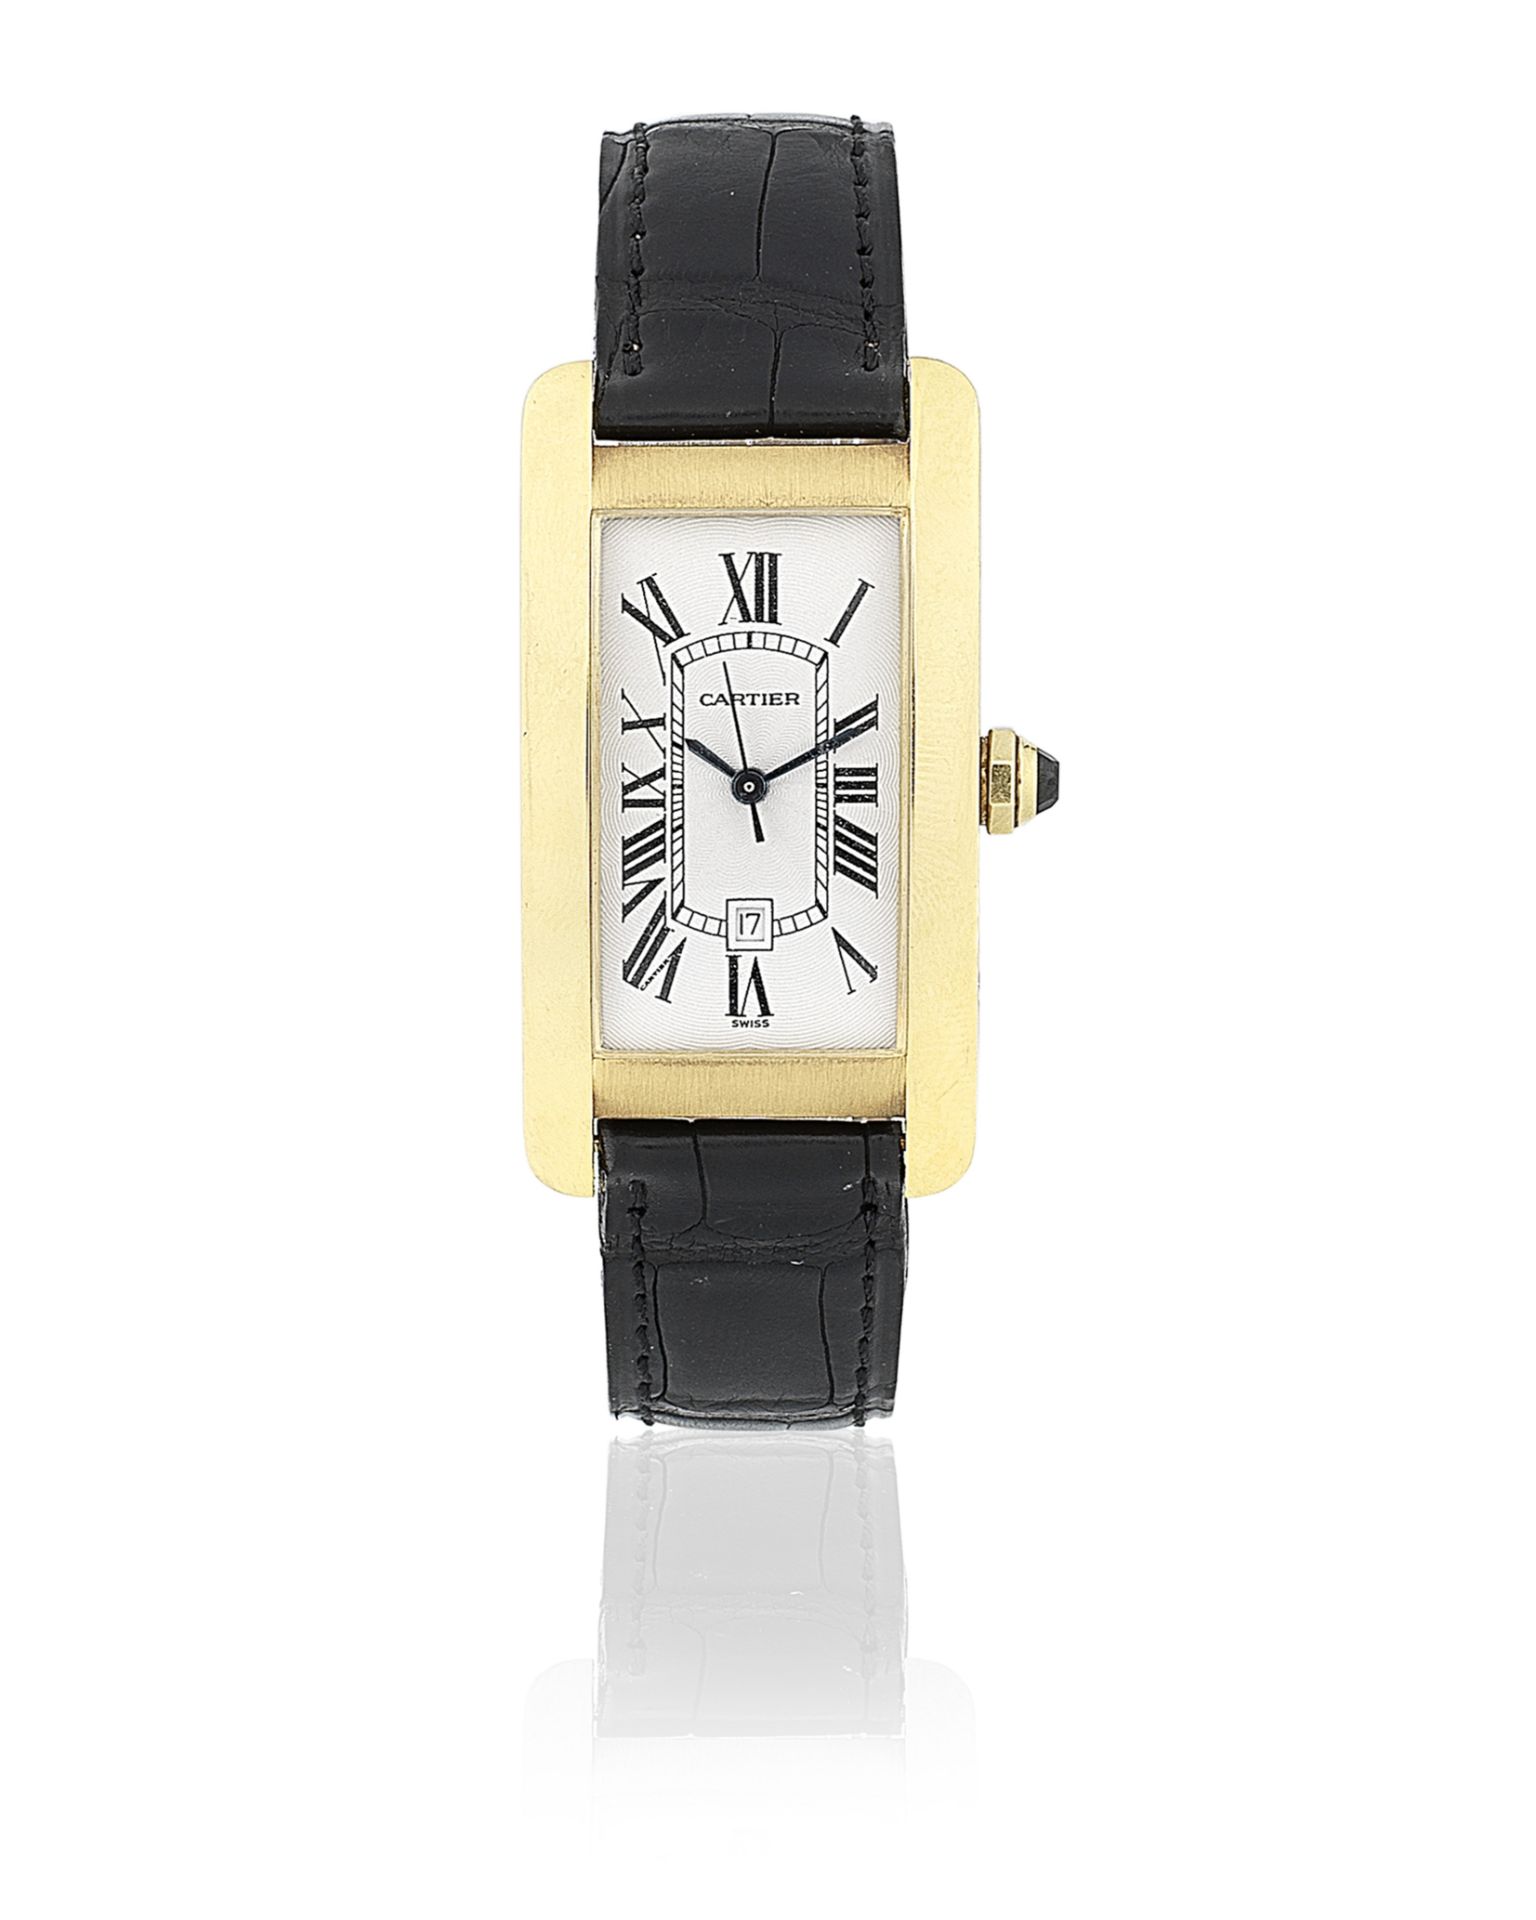 Cartier. An 18K gold automatic calendar wristwatch Tank Américaine, Ref: 1725, Circa 1995